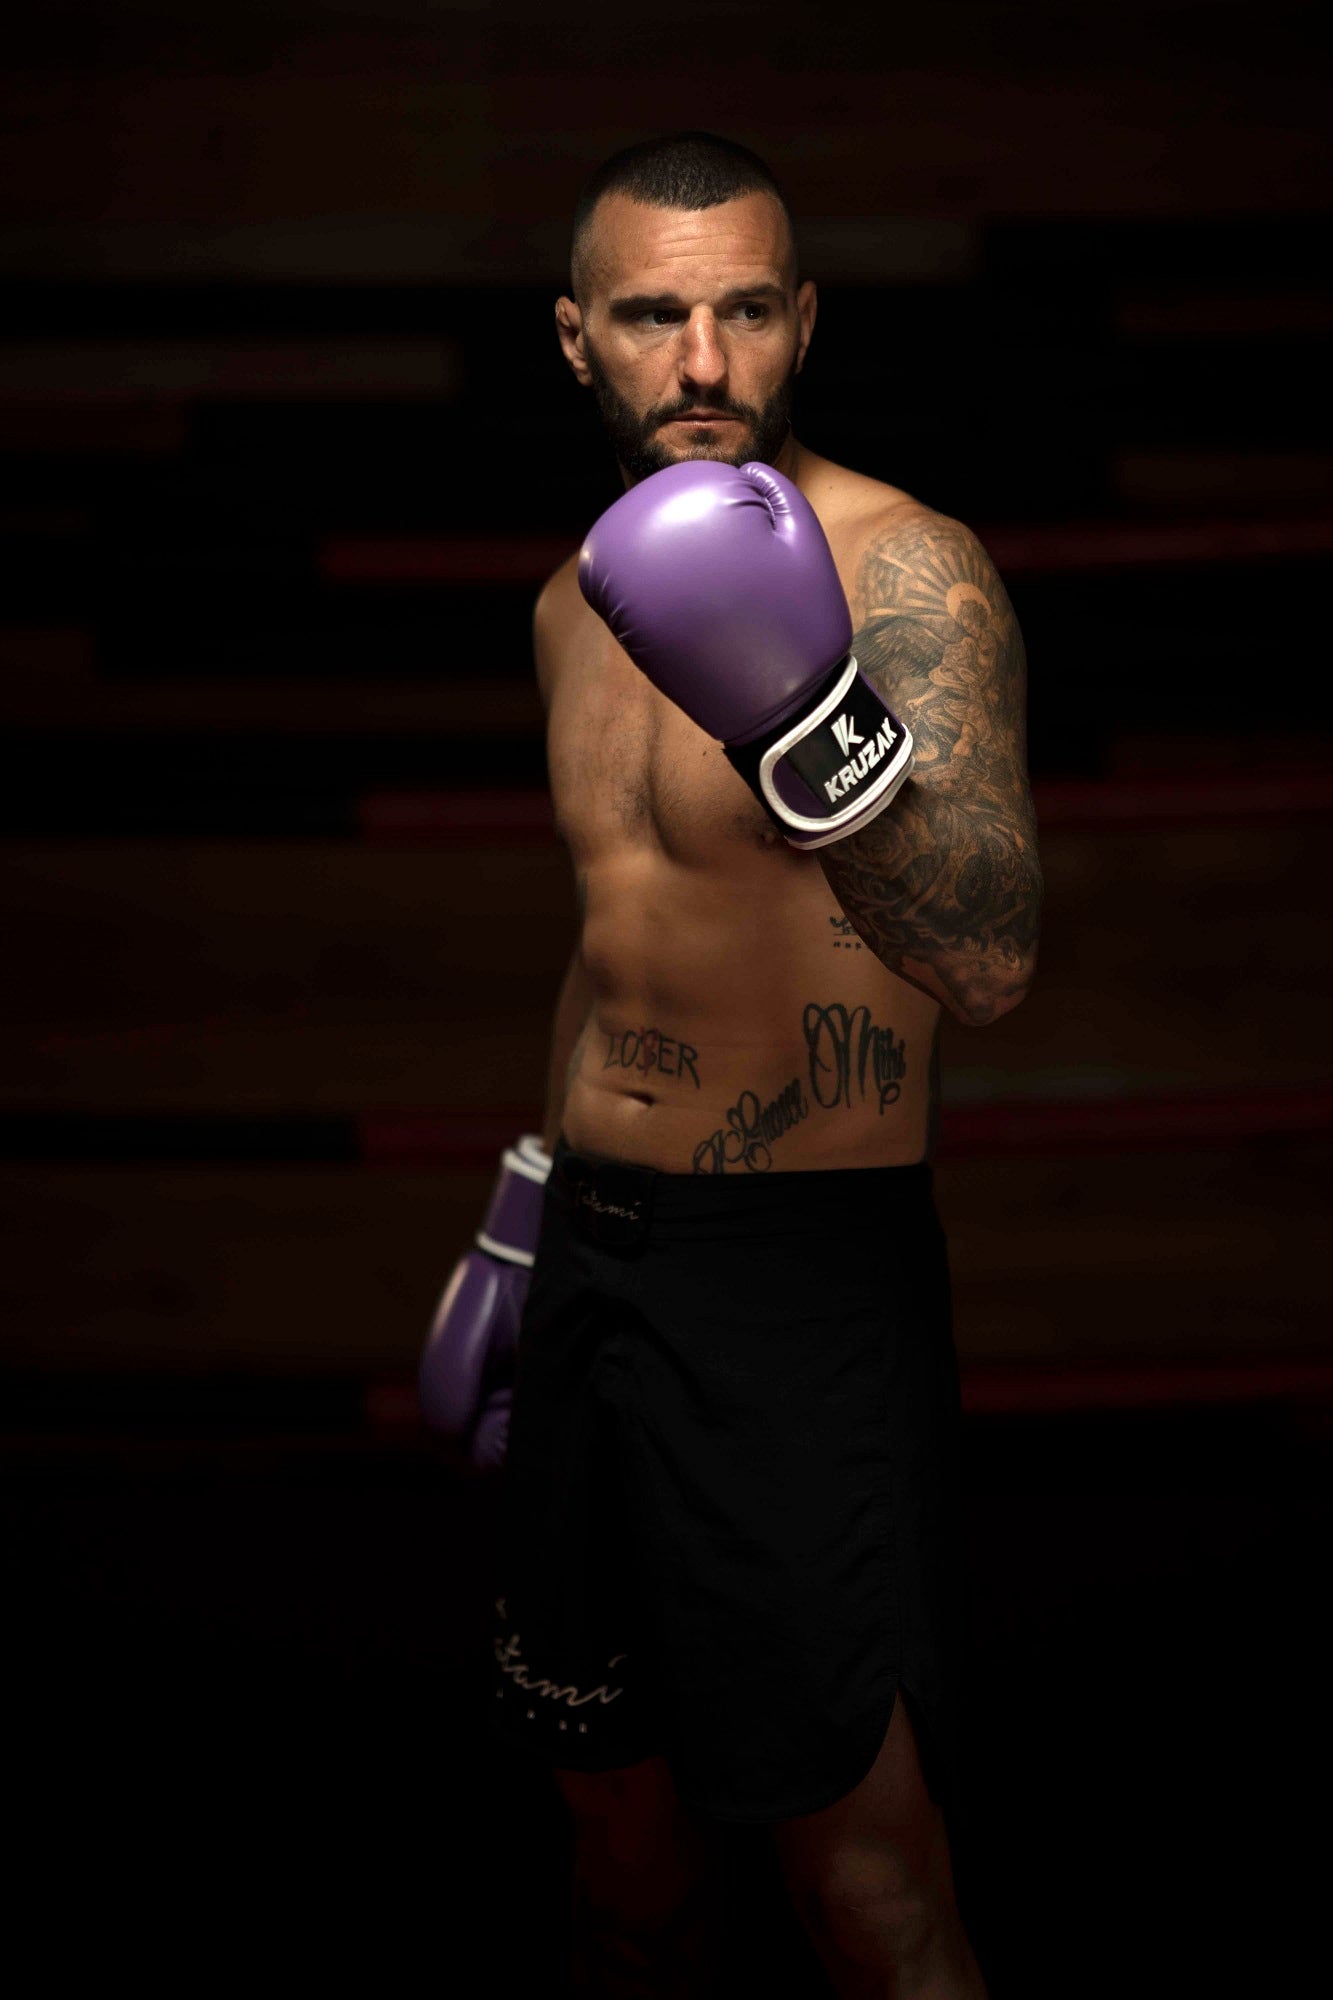 Venum x Kaz Elite Boxing Gloves Purple MMA Muay Thai Kick Boxing Training